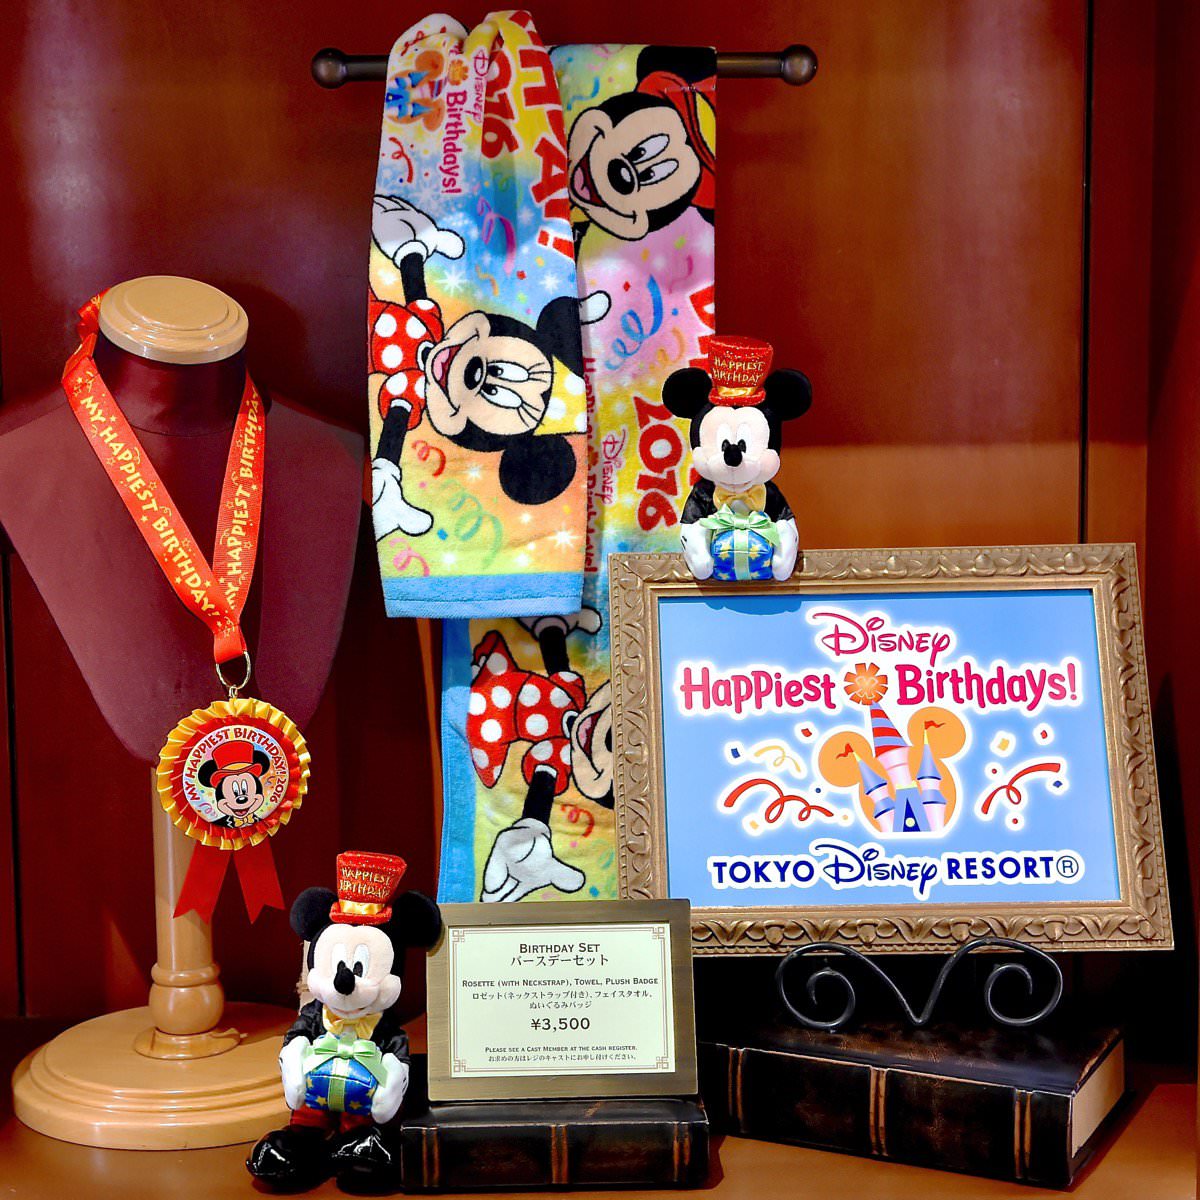 おうちでもパーク気分でお祝いができる 東京ディズニーリゾート Disney Birthday Home デコレーションキット